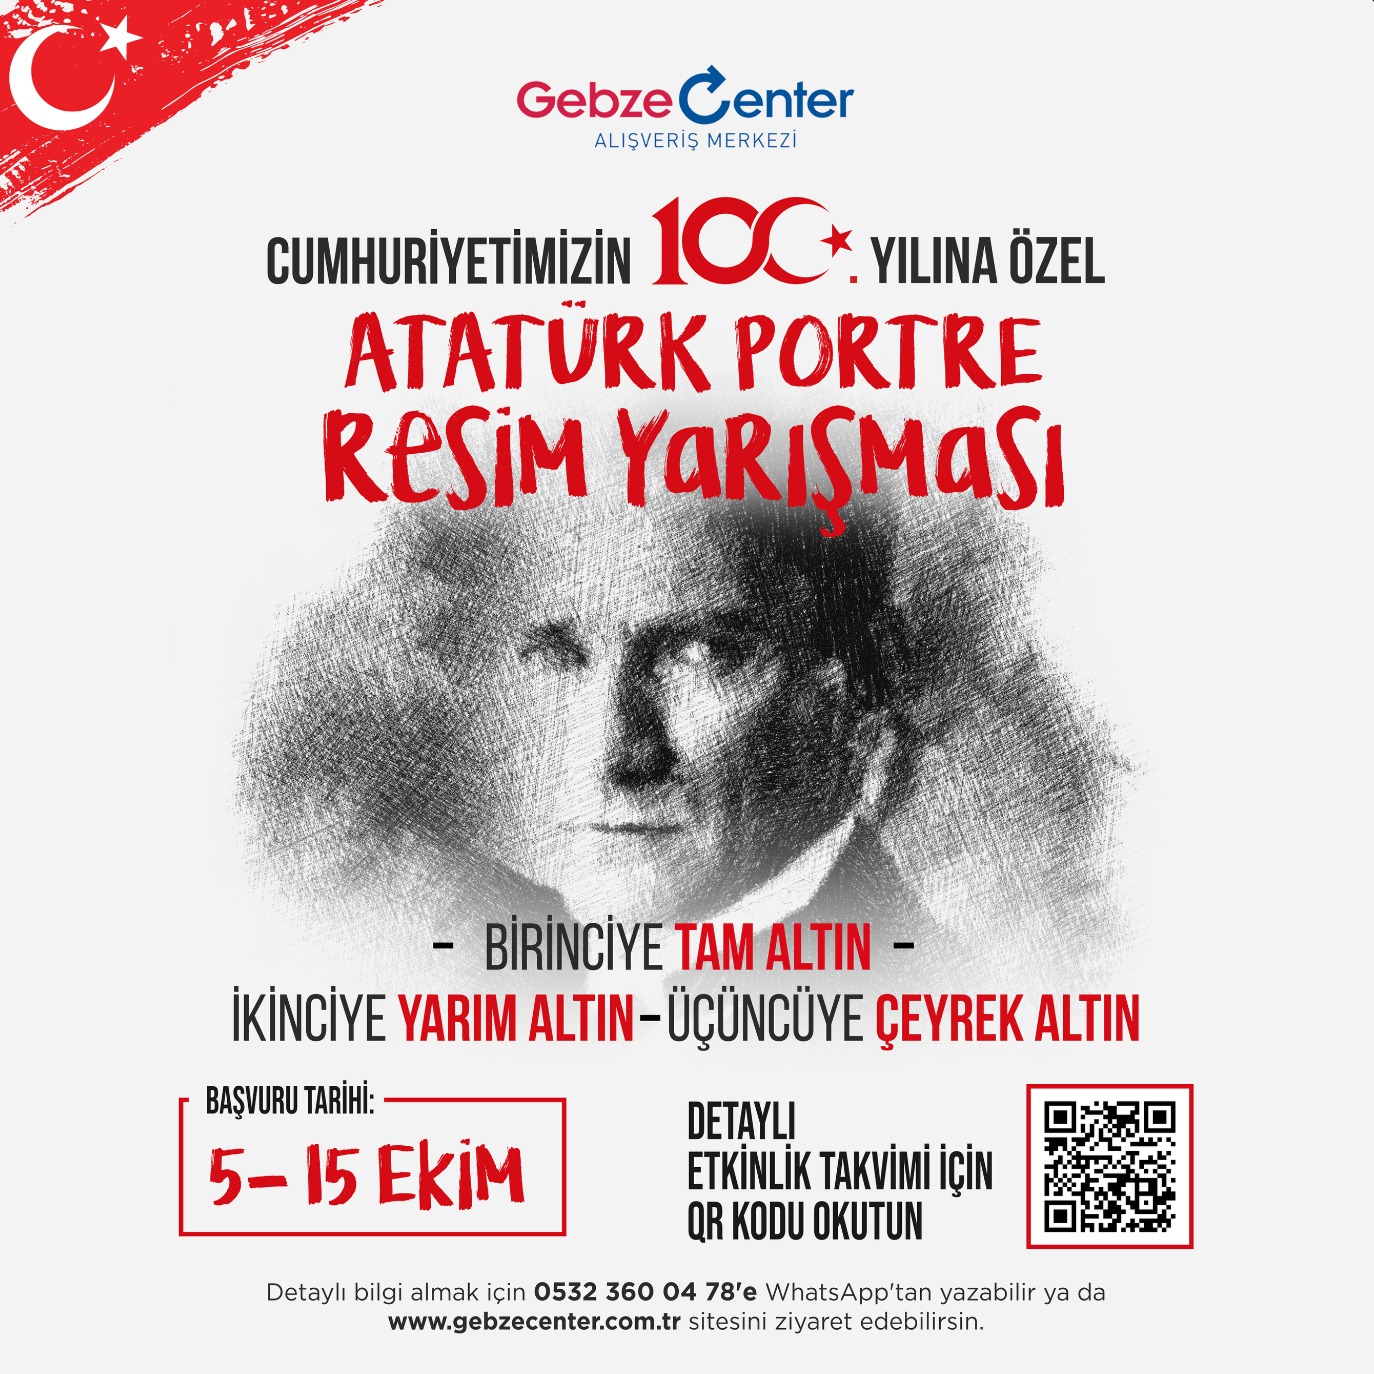 Gebze Center’dan Cumhuriyetin 100. Yılına Özel Atatürk Portre Yarışması